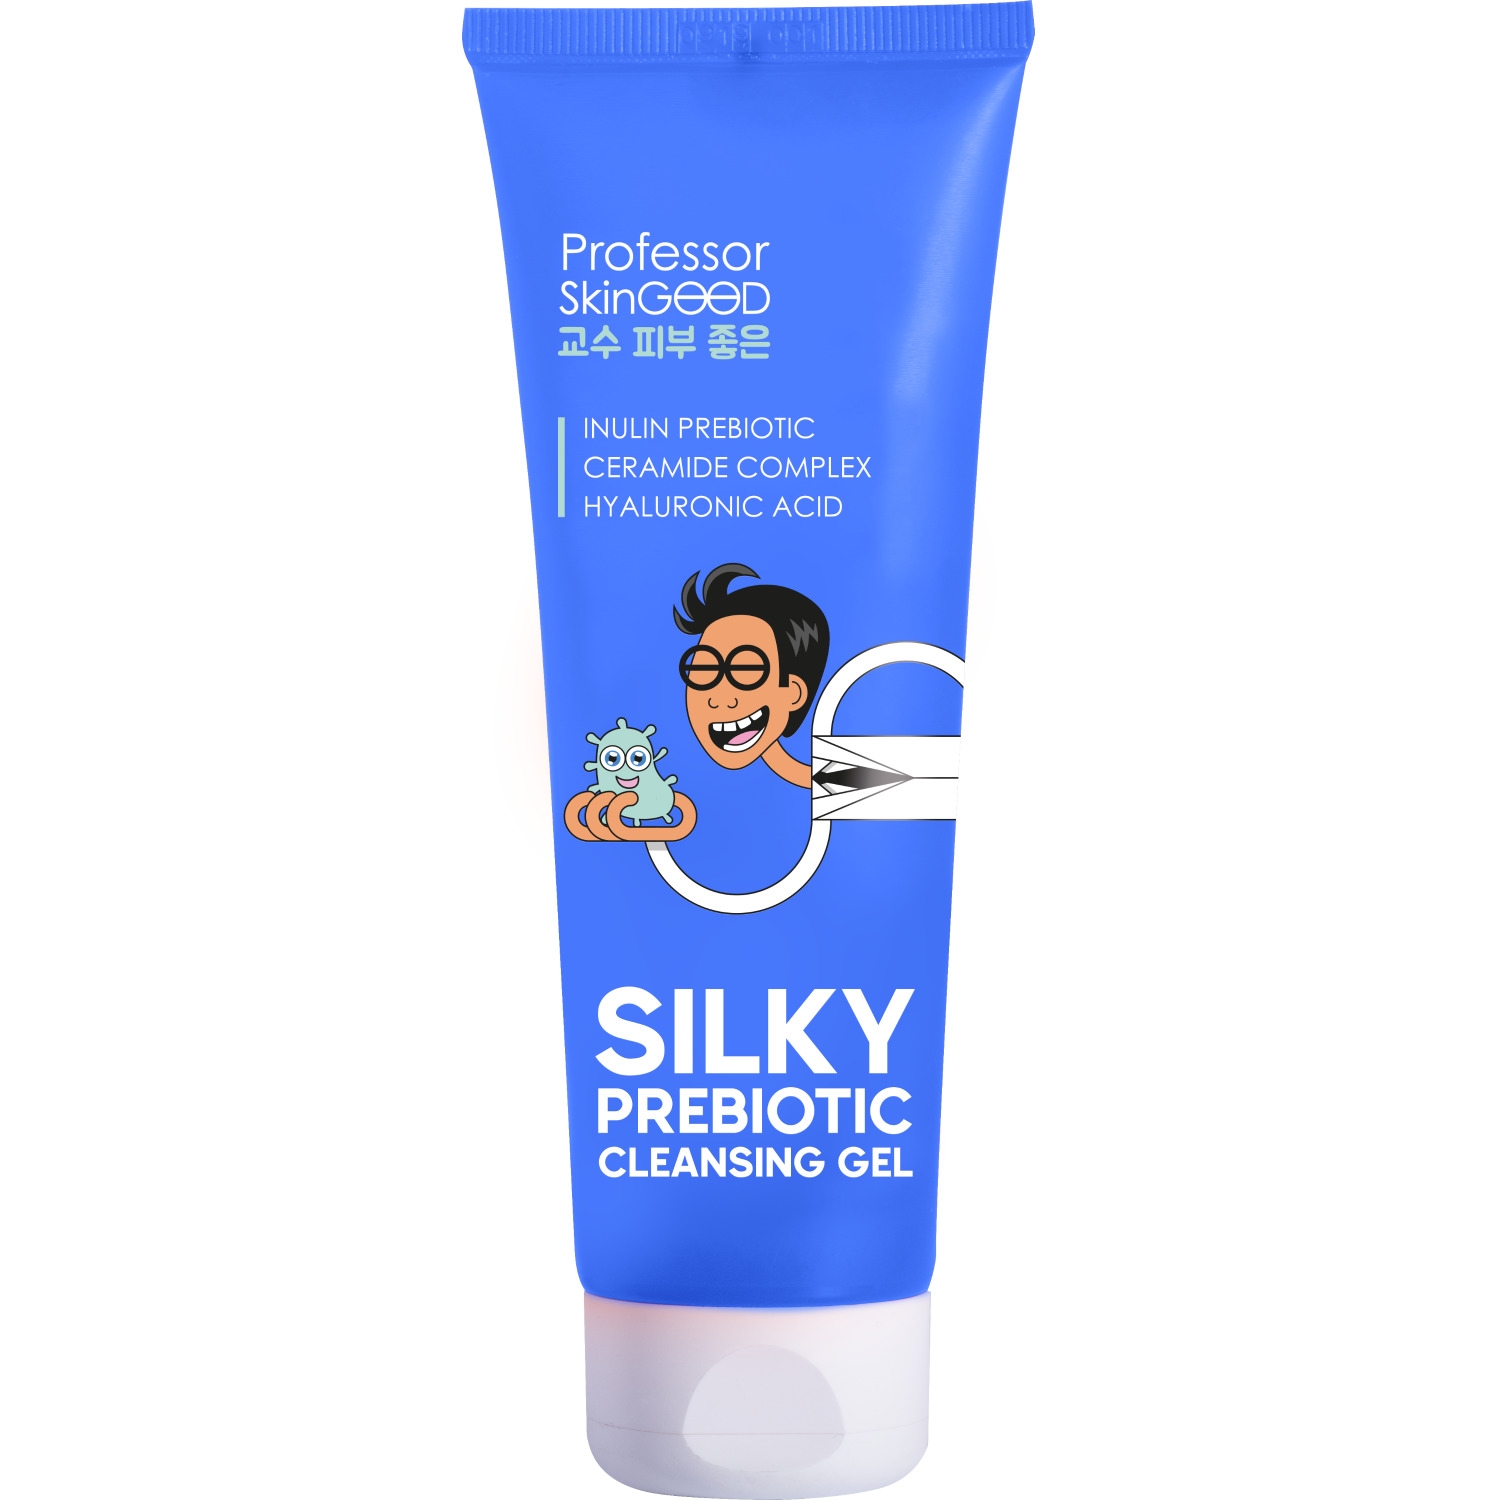 Гель для умывания Professor SkinGOOD Silky Prebiotic Cleansing Gel увлажняющий 120 мл vitime мармеладные пастилки prebiotic пребиотик